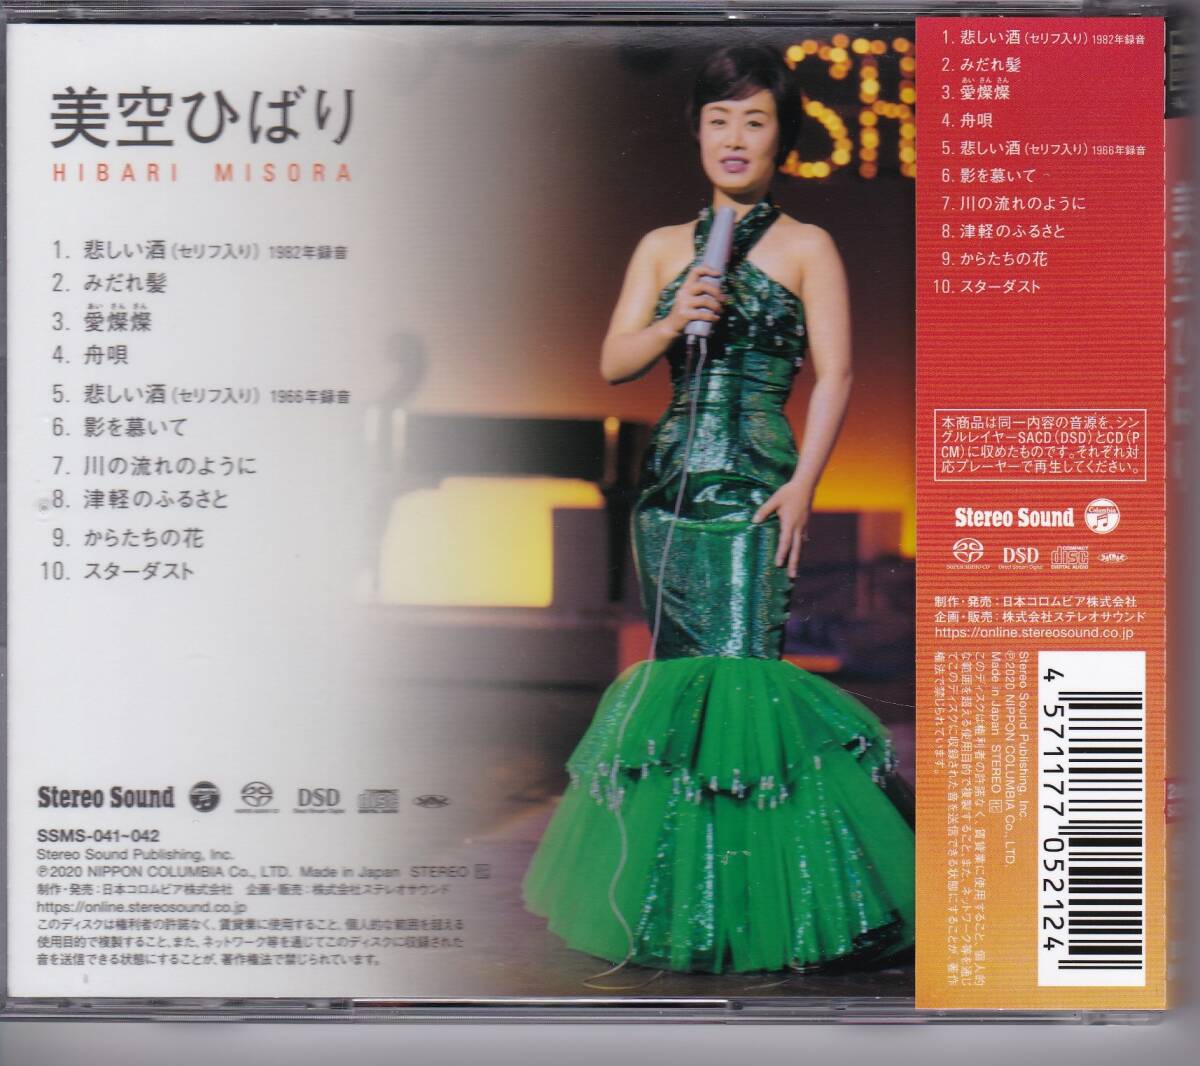  прекрасный пустой .../ SACD+CD*2 листов комплект / Stereo Sound ORIGINAL SELECTION Vol.7 / б/у 